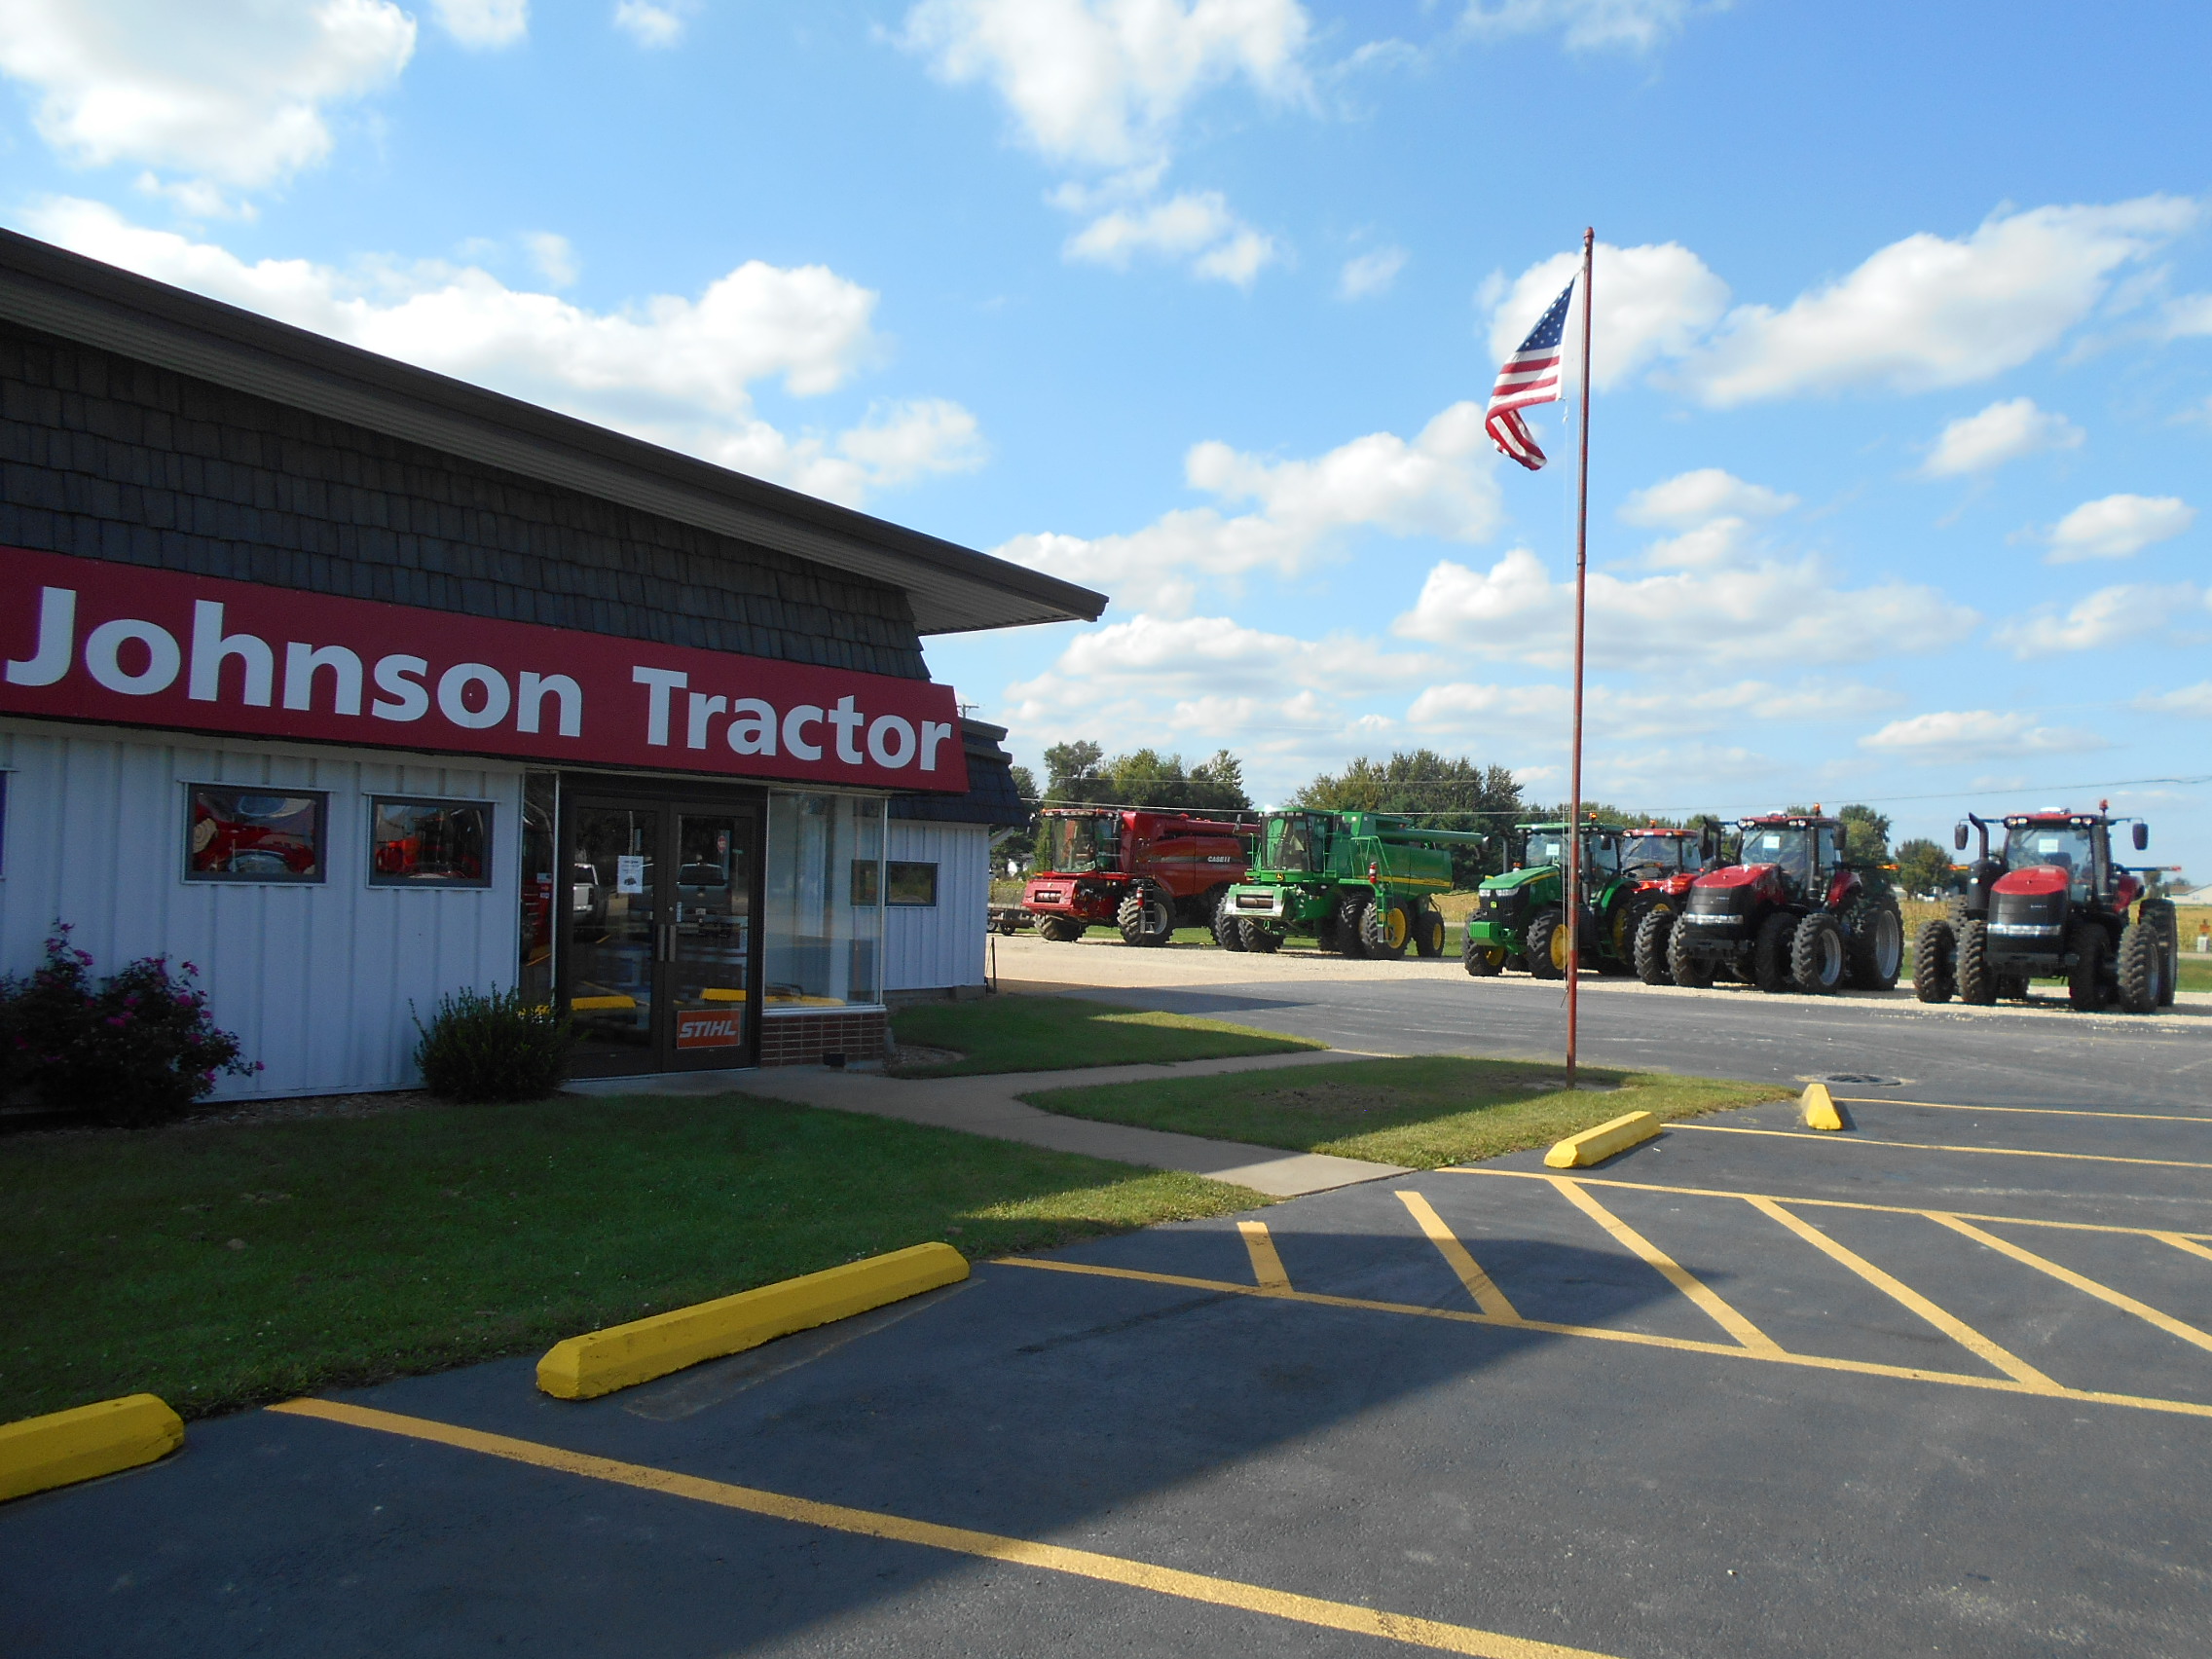 Johnson Tractor Inc.